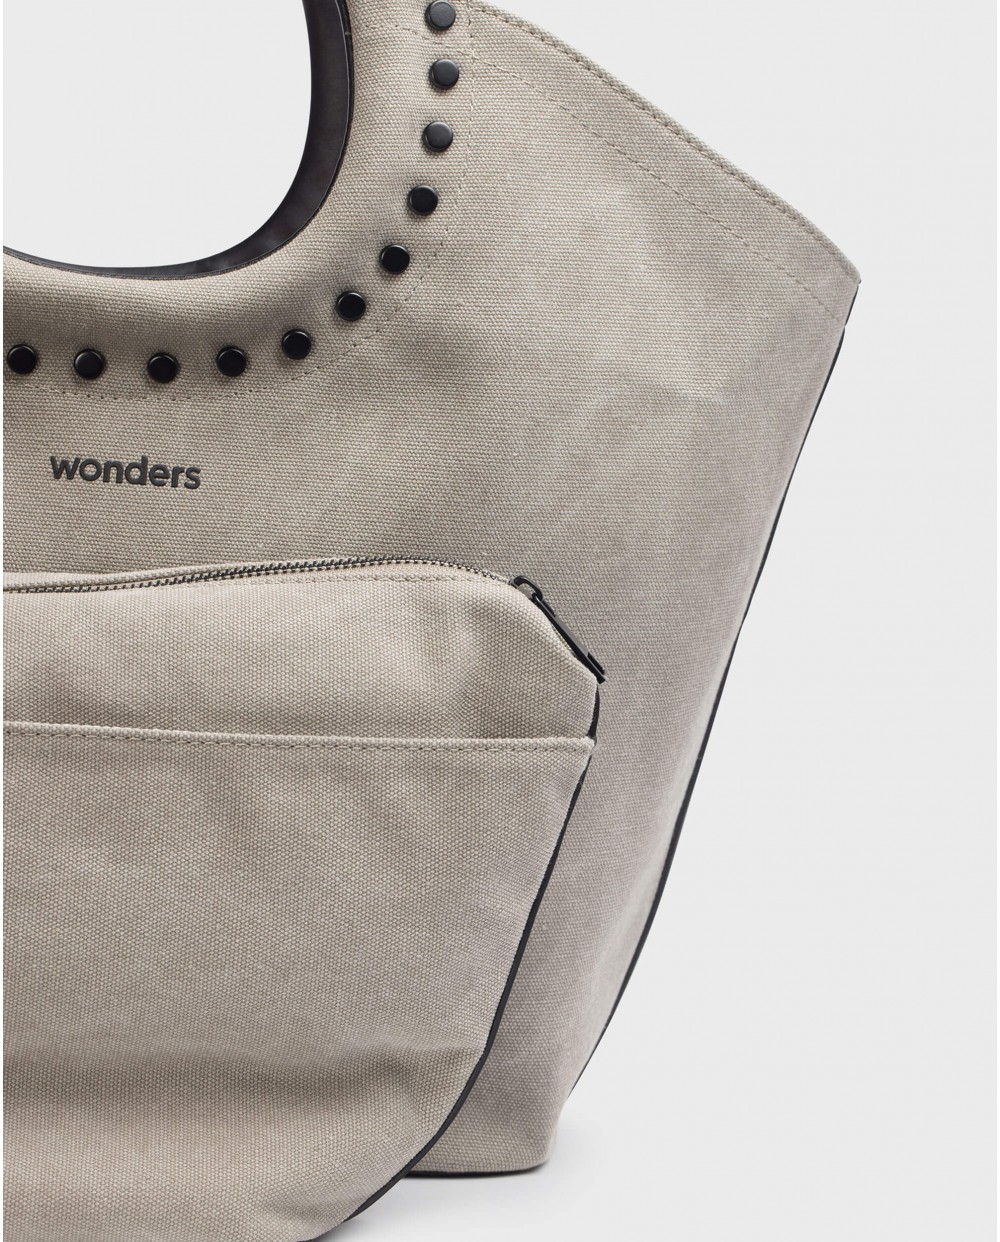 Wonders-Bags-Bag